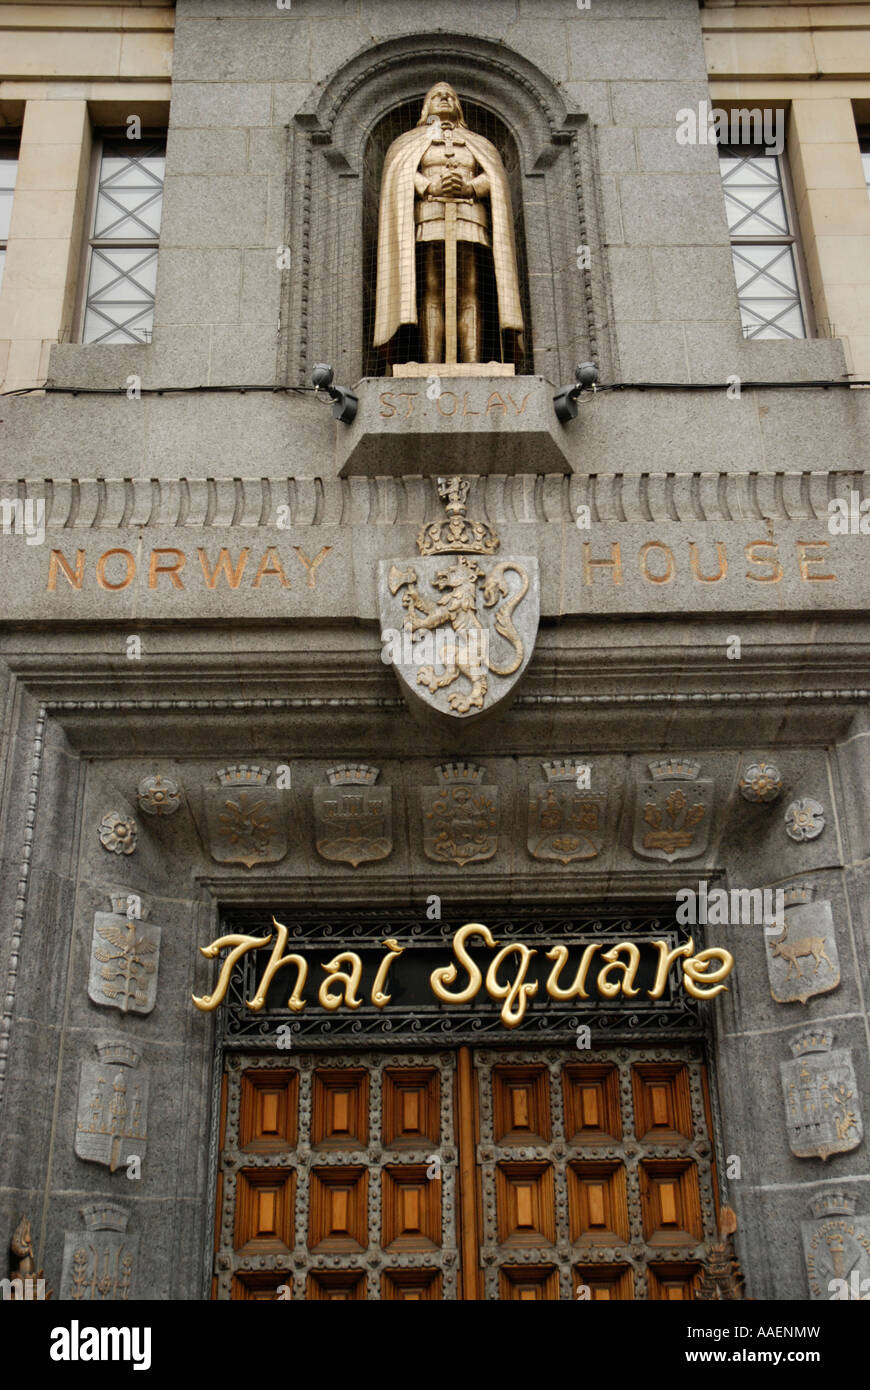 Norwegen-Haus und Statue von St. Olay jetzt das Thai Square Restaurant in Cockspur Street London England Stockfoto